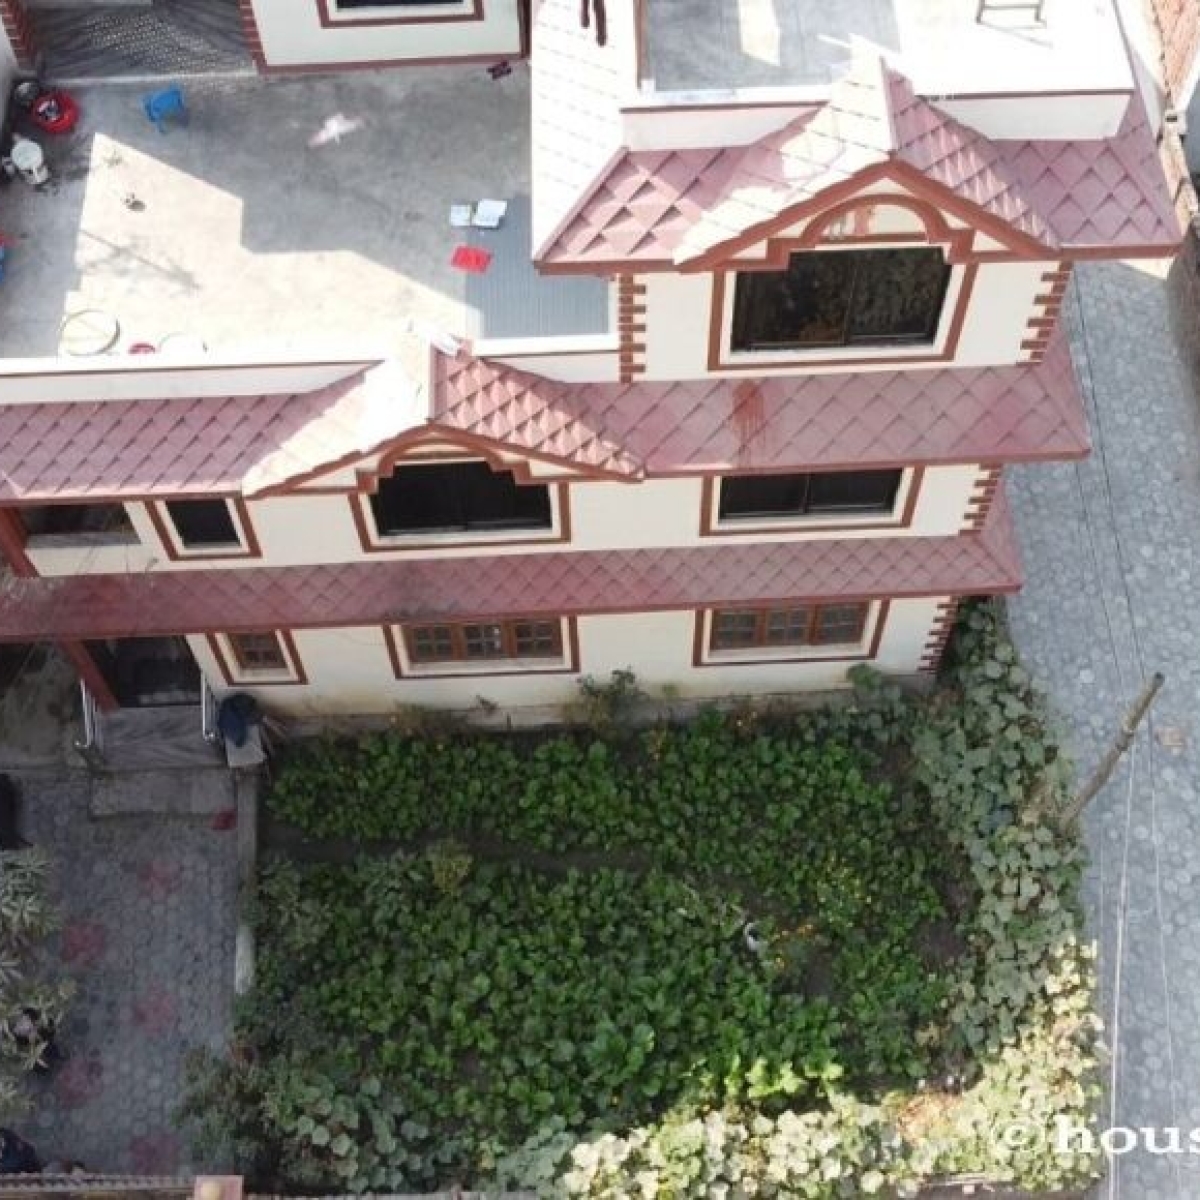 House Sale In Swayambhu, Raichowk